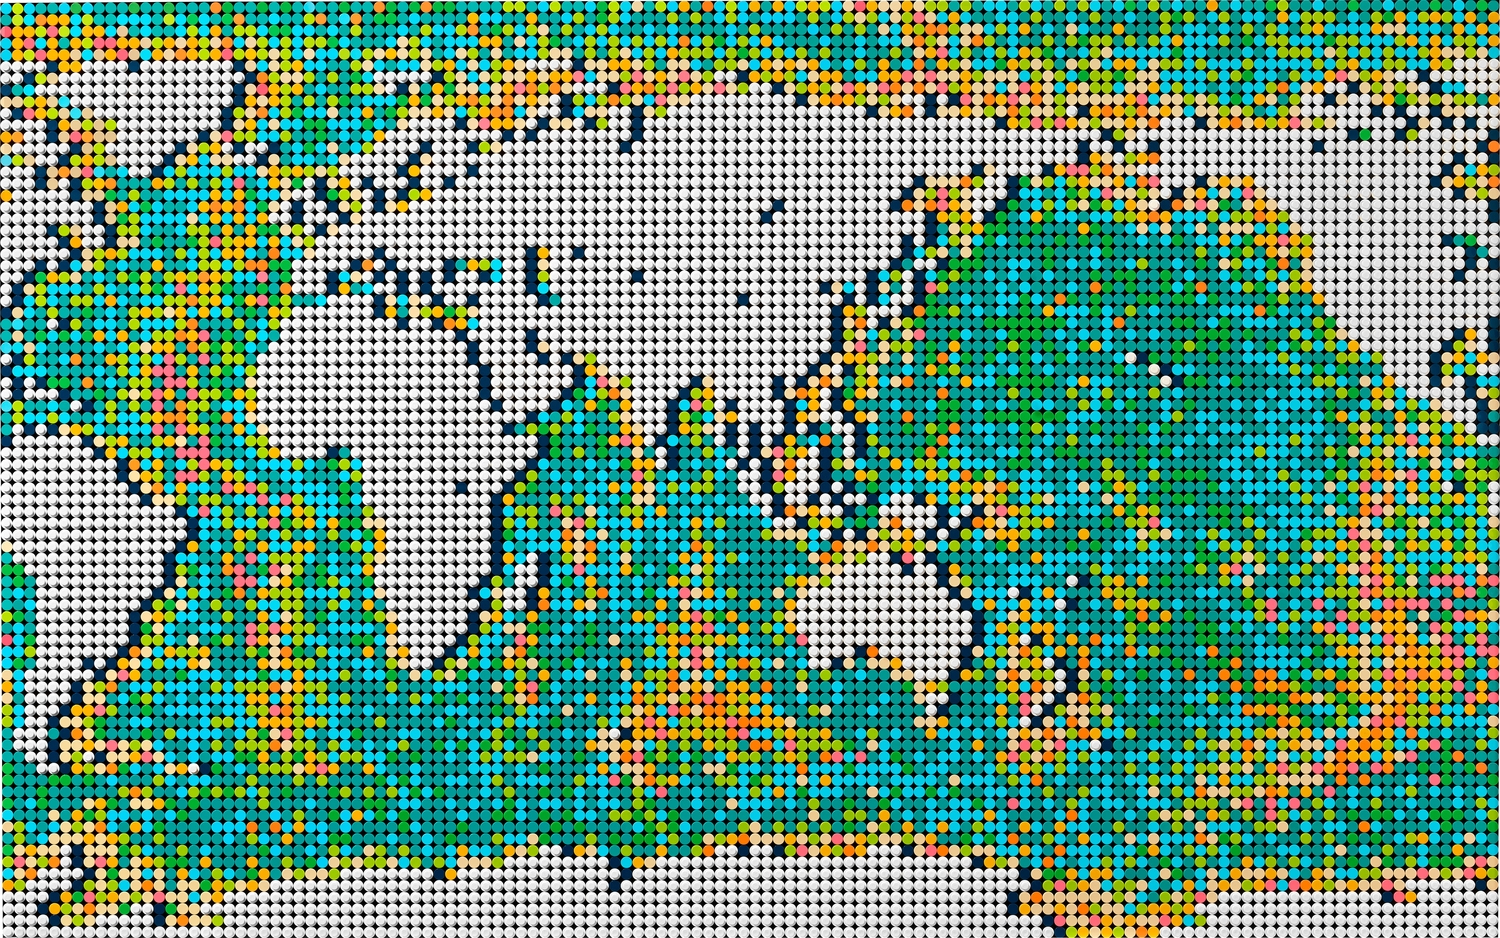 LEGO world map  Lego mosaic, Lego creative, Lego projects